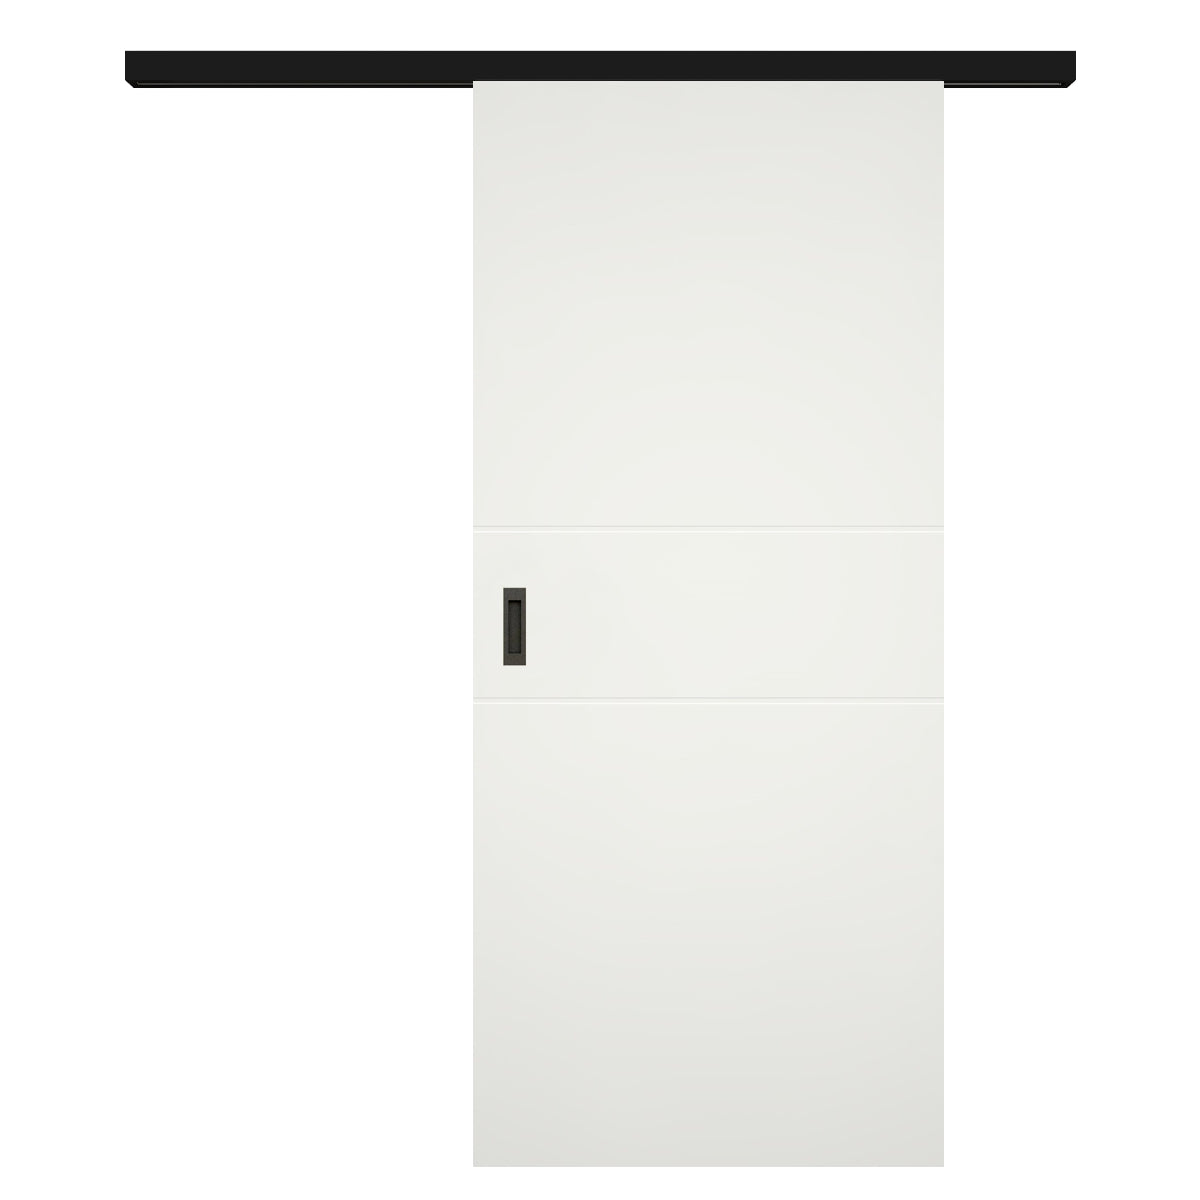 Schiebetür für Set mit schwarzem Laufkasten soft-weiß 2 Rillen - Modell Designtür Q21